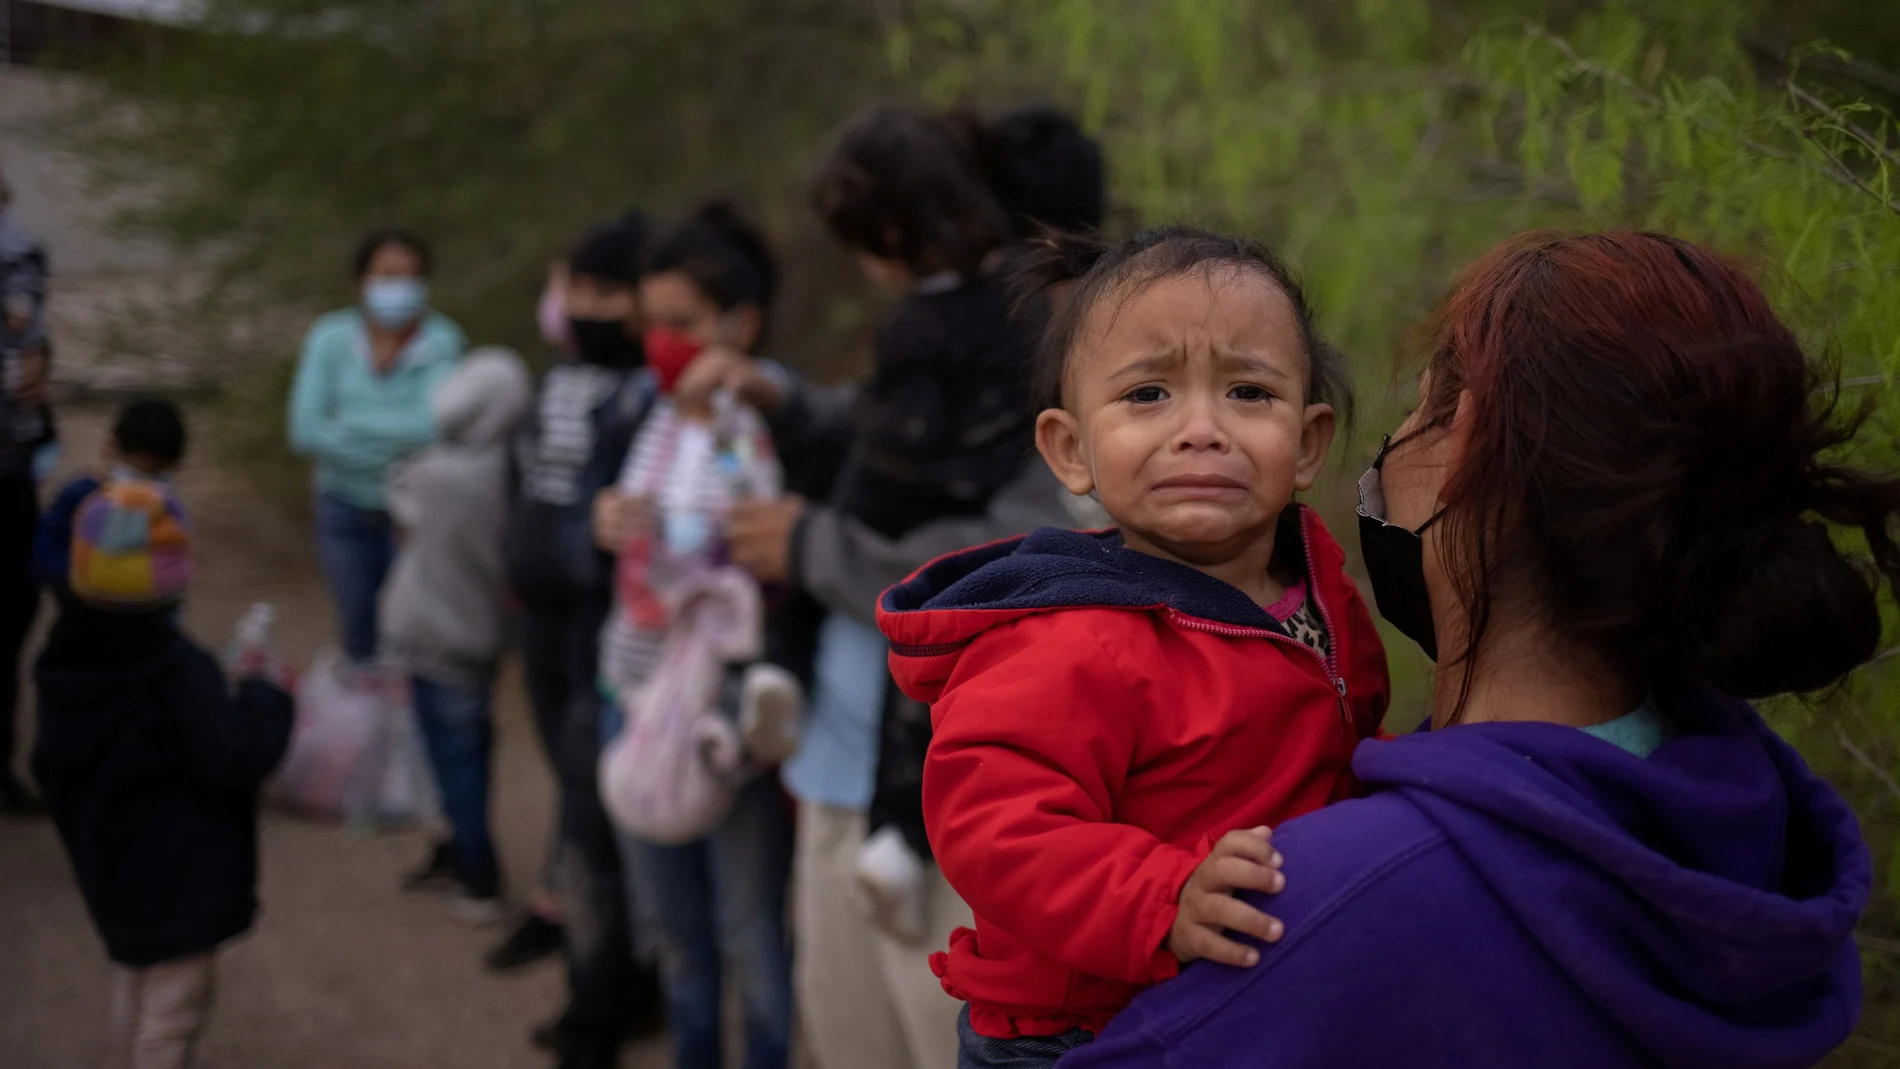 La hondureña Evelyn lleva en brazos a su hija Zoe de 18 meses mientras espera en la frontera con Estados Unidos a ser trasladada a Penitas en Texas para tramitar su solicitud de asilo